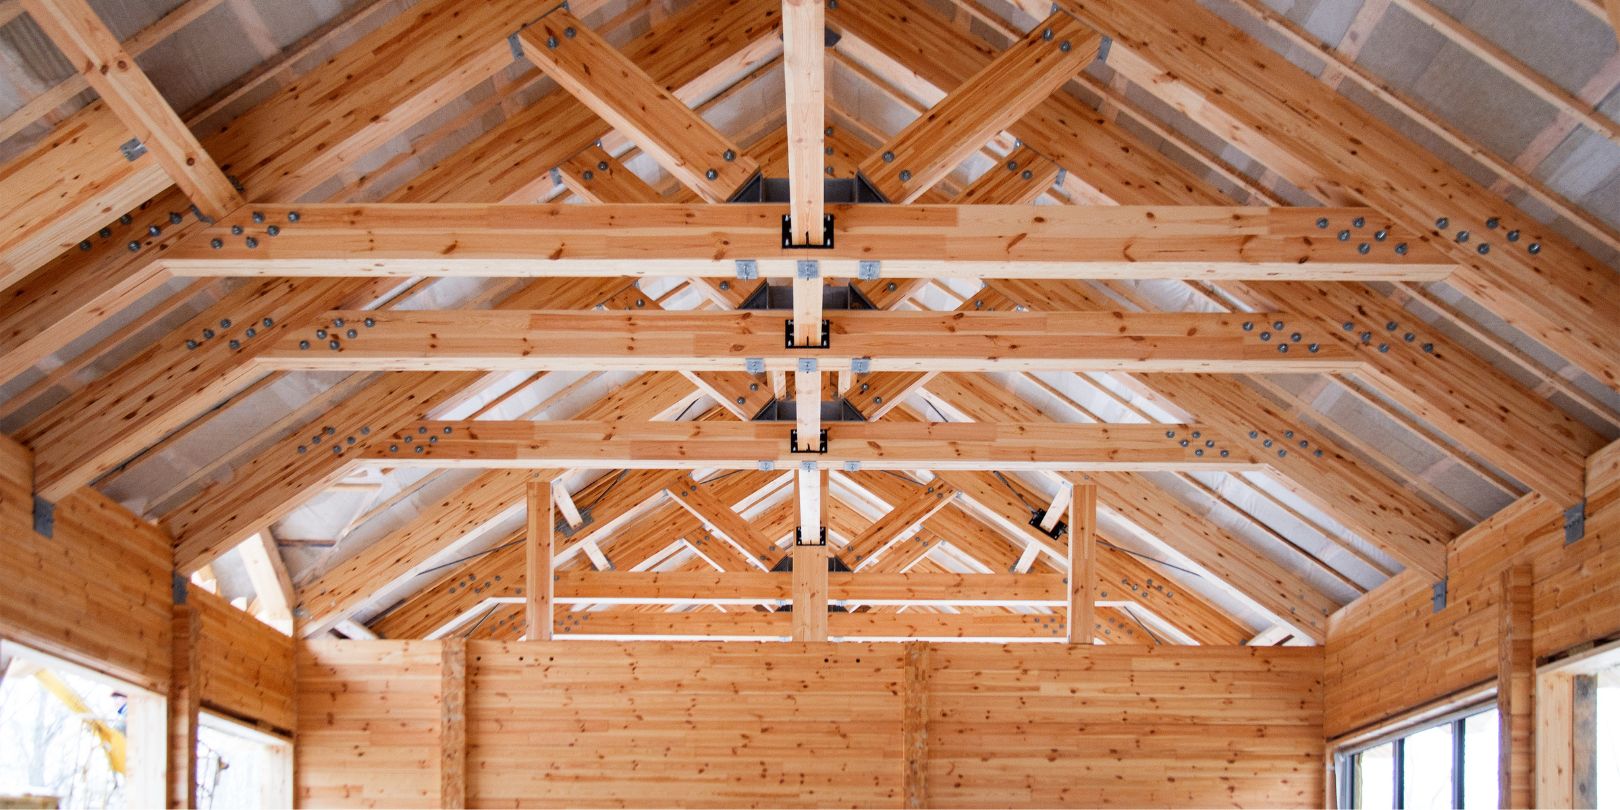 roof construction of big wooden trusses closeup